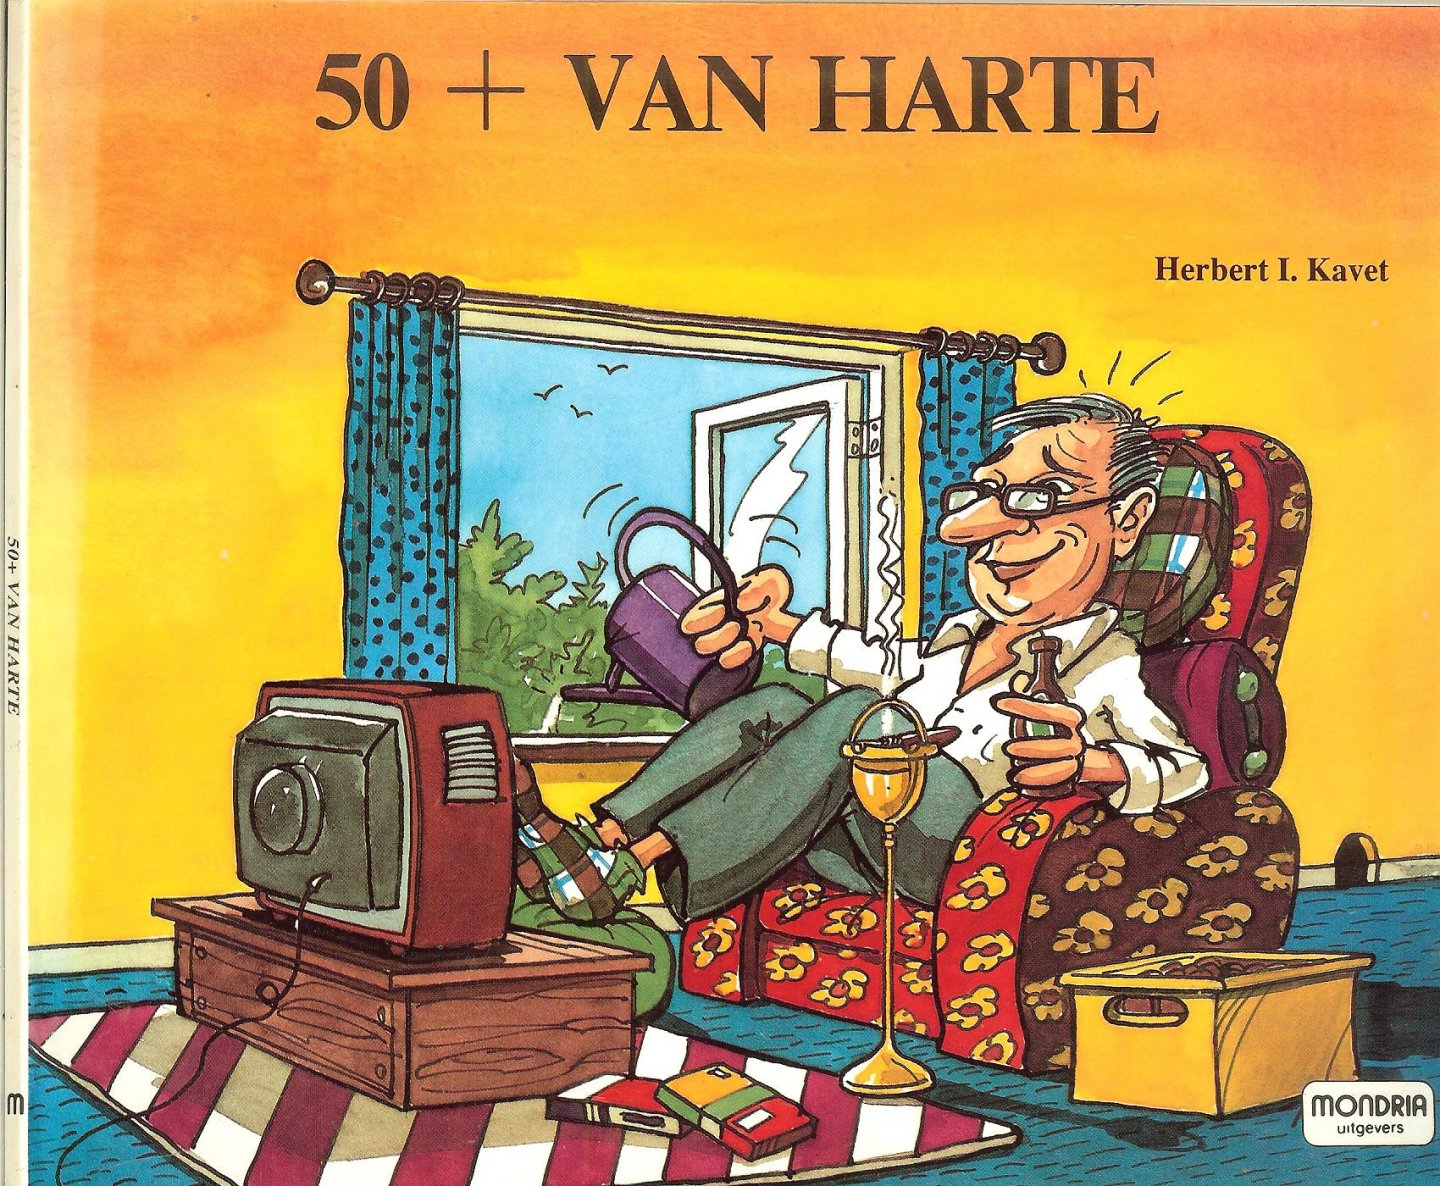 Kavet, Herbert .I.  Ontwerp en tekeningen van  Martin Riskin  Vertaling N.H. Bosboom de Haas - 50+ van harte